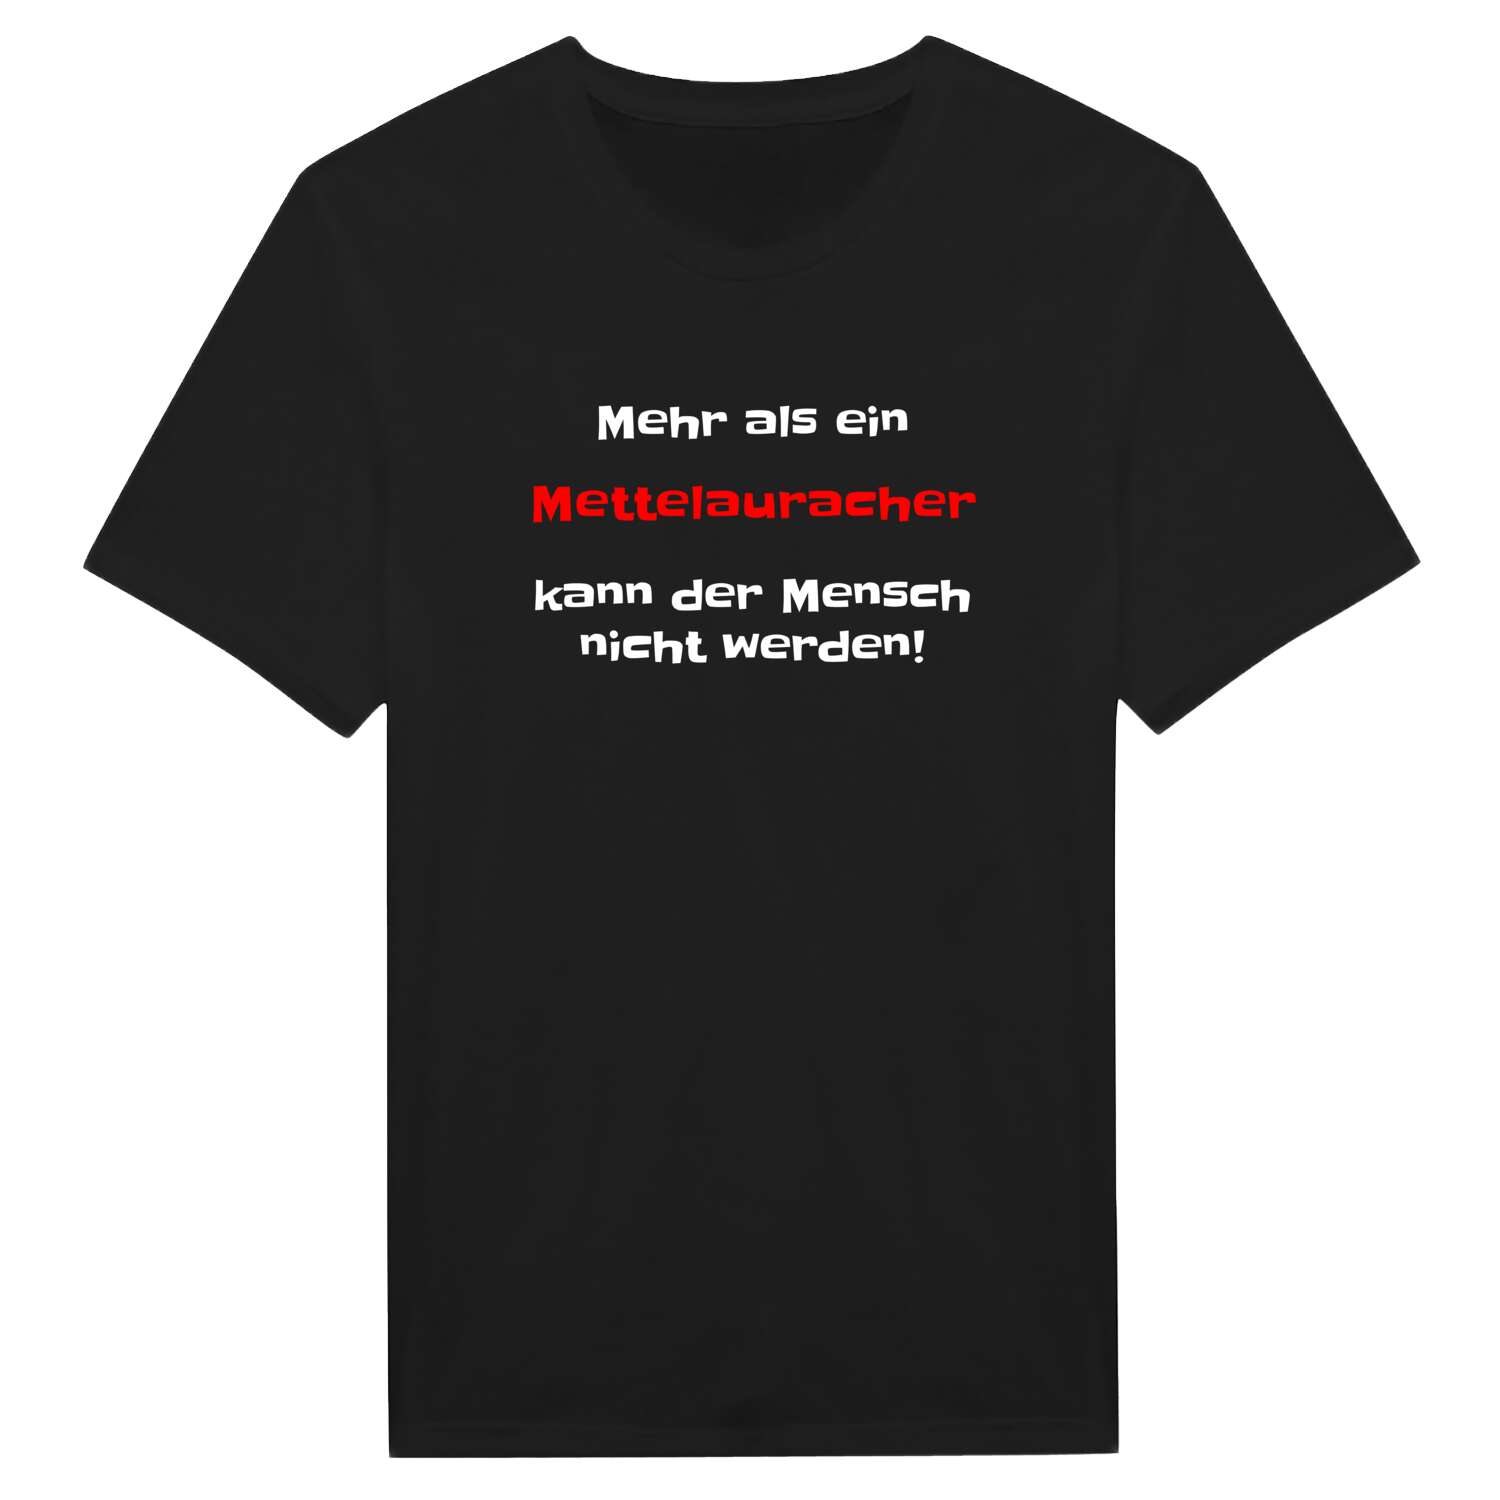 Mettelaurach T-Shirt »Mehr als ein«